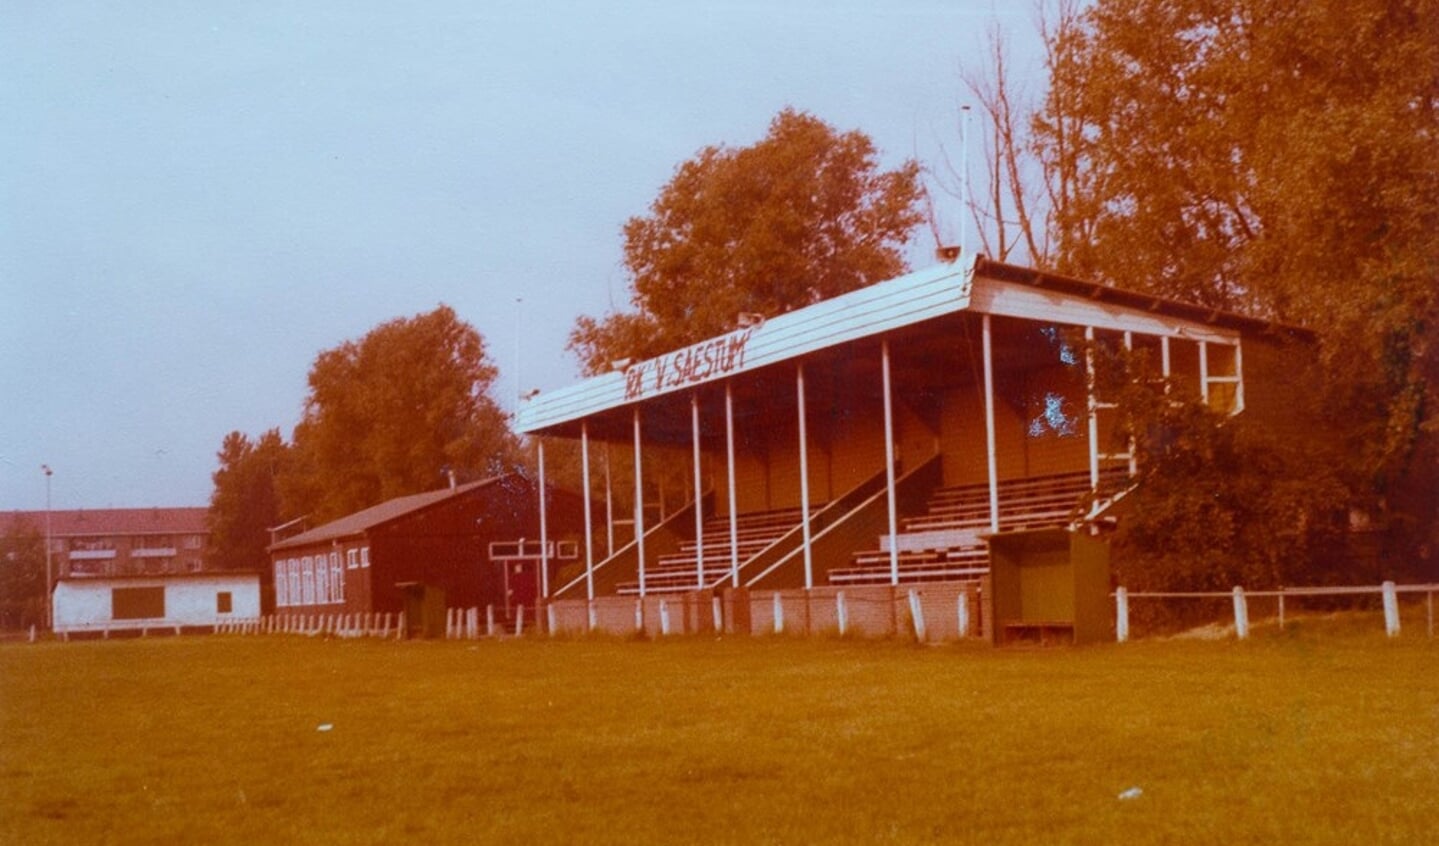 De eerste accommodatie van Saestum, toen de club in 1979 het terrein aan de Noordweg ging bespelen. Inmiddels zijn er al de nodige verbouwingen geweest.